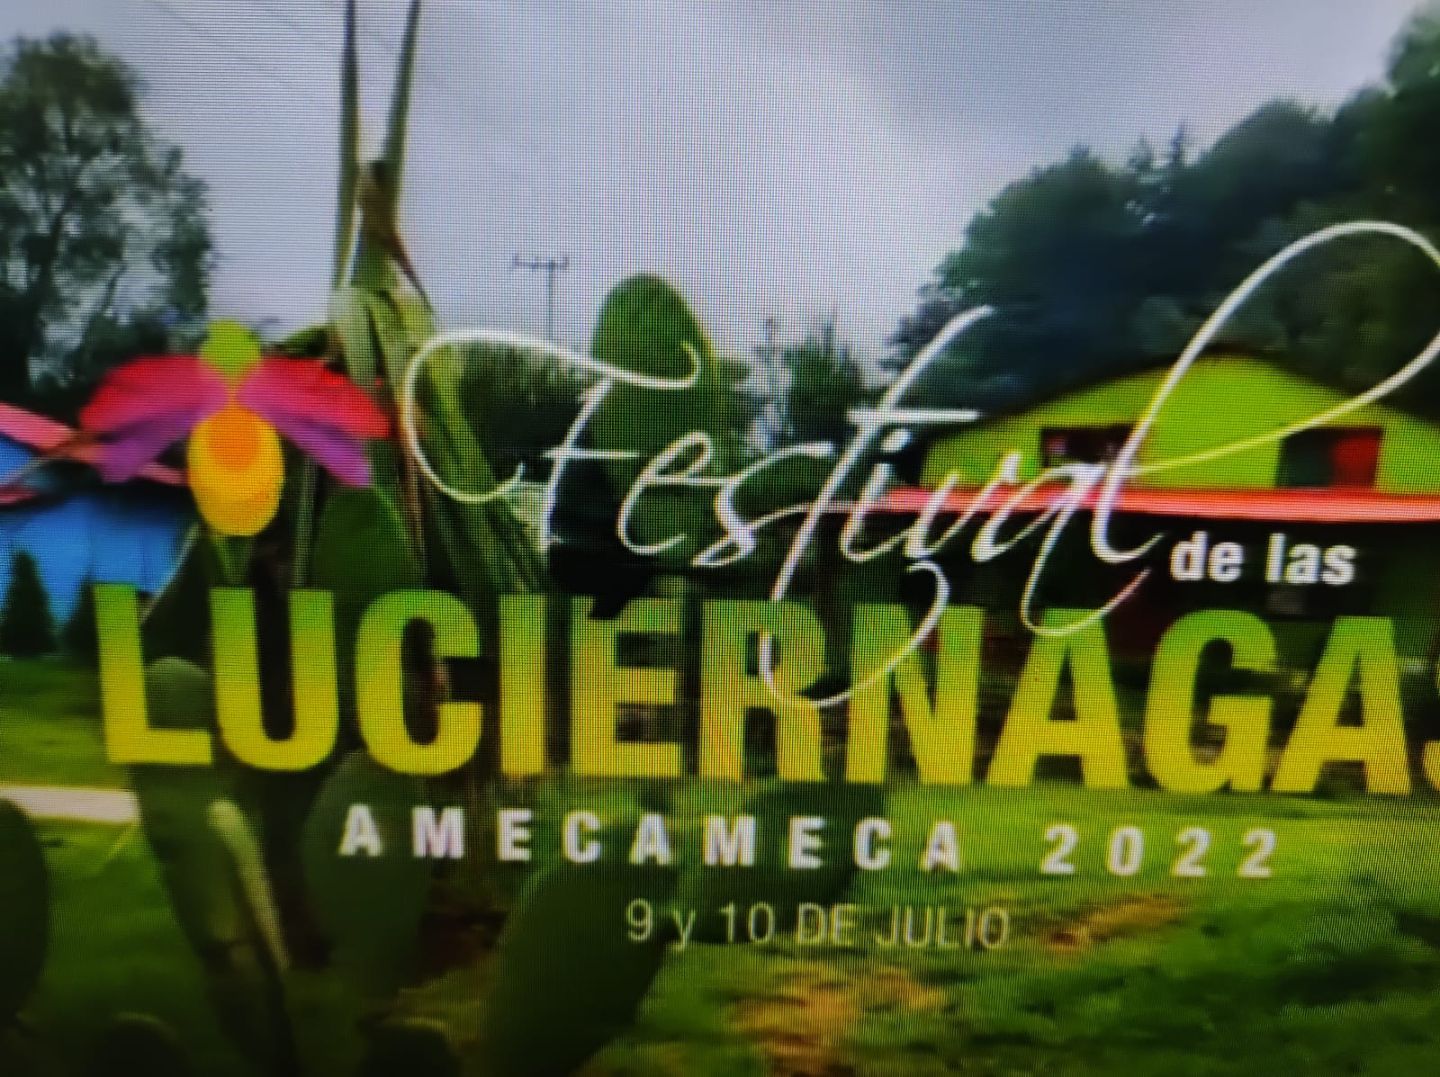 #Amecameca 9 y 10 de julio Festival de las Luciernagas